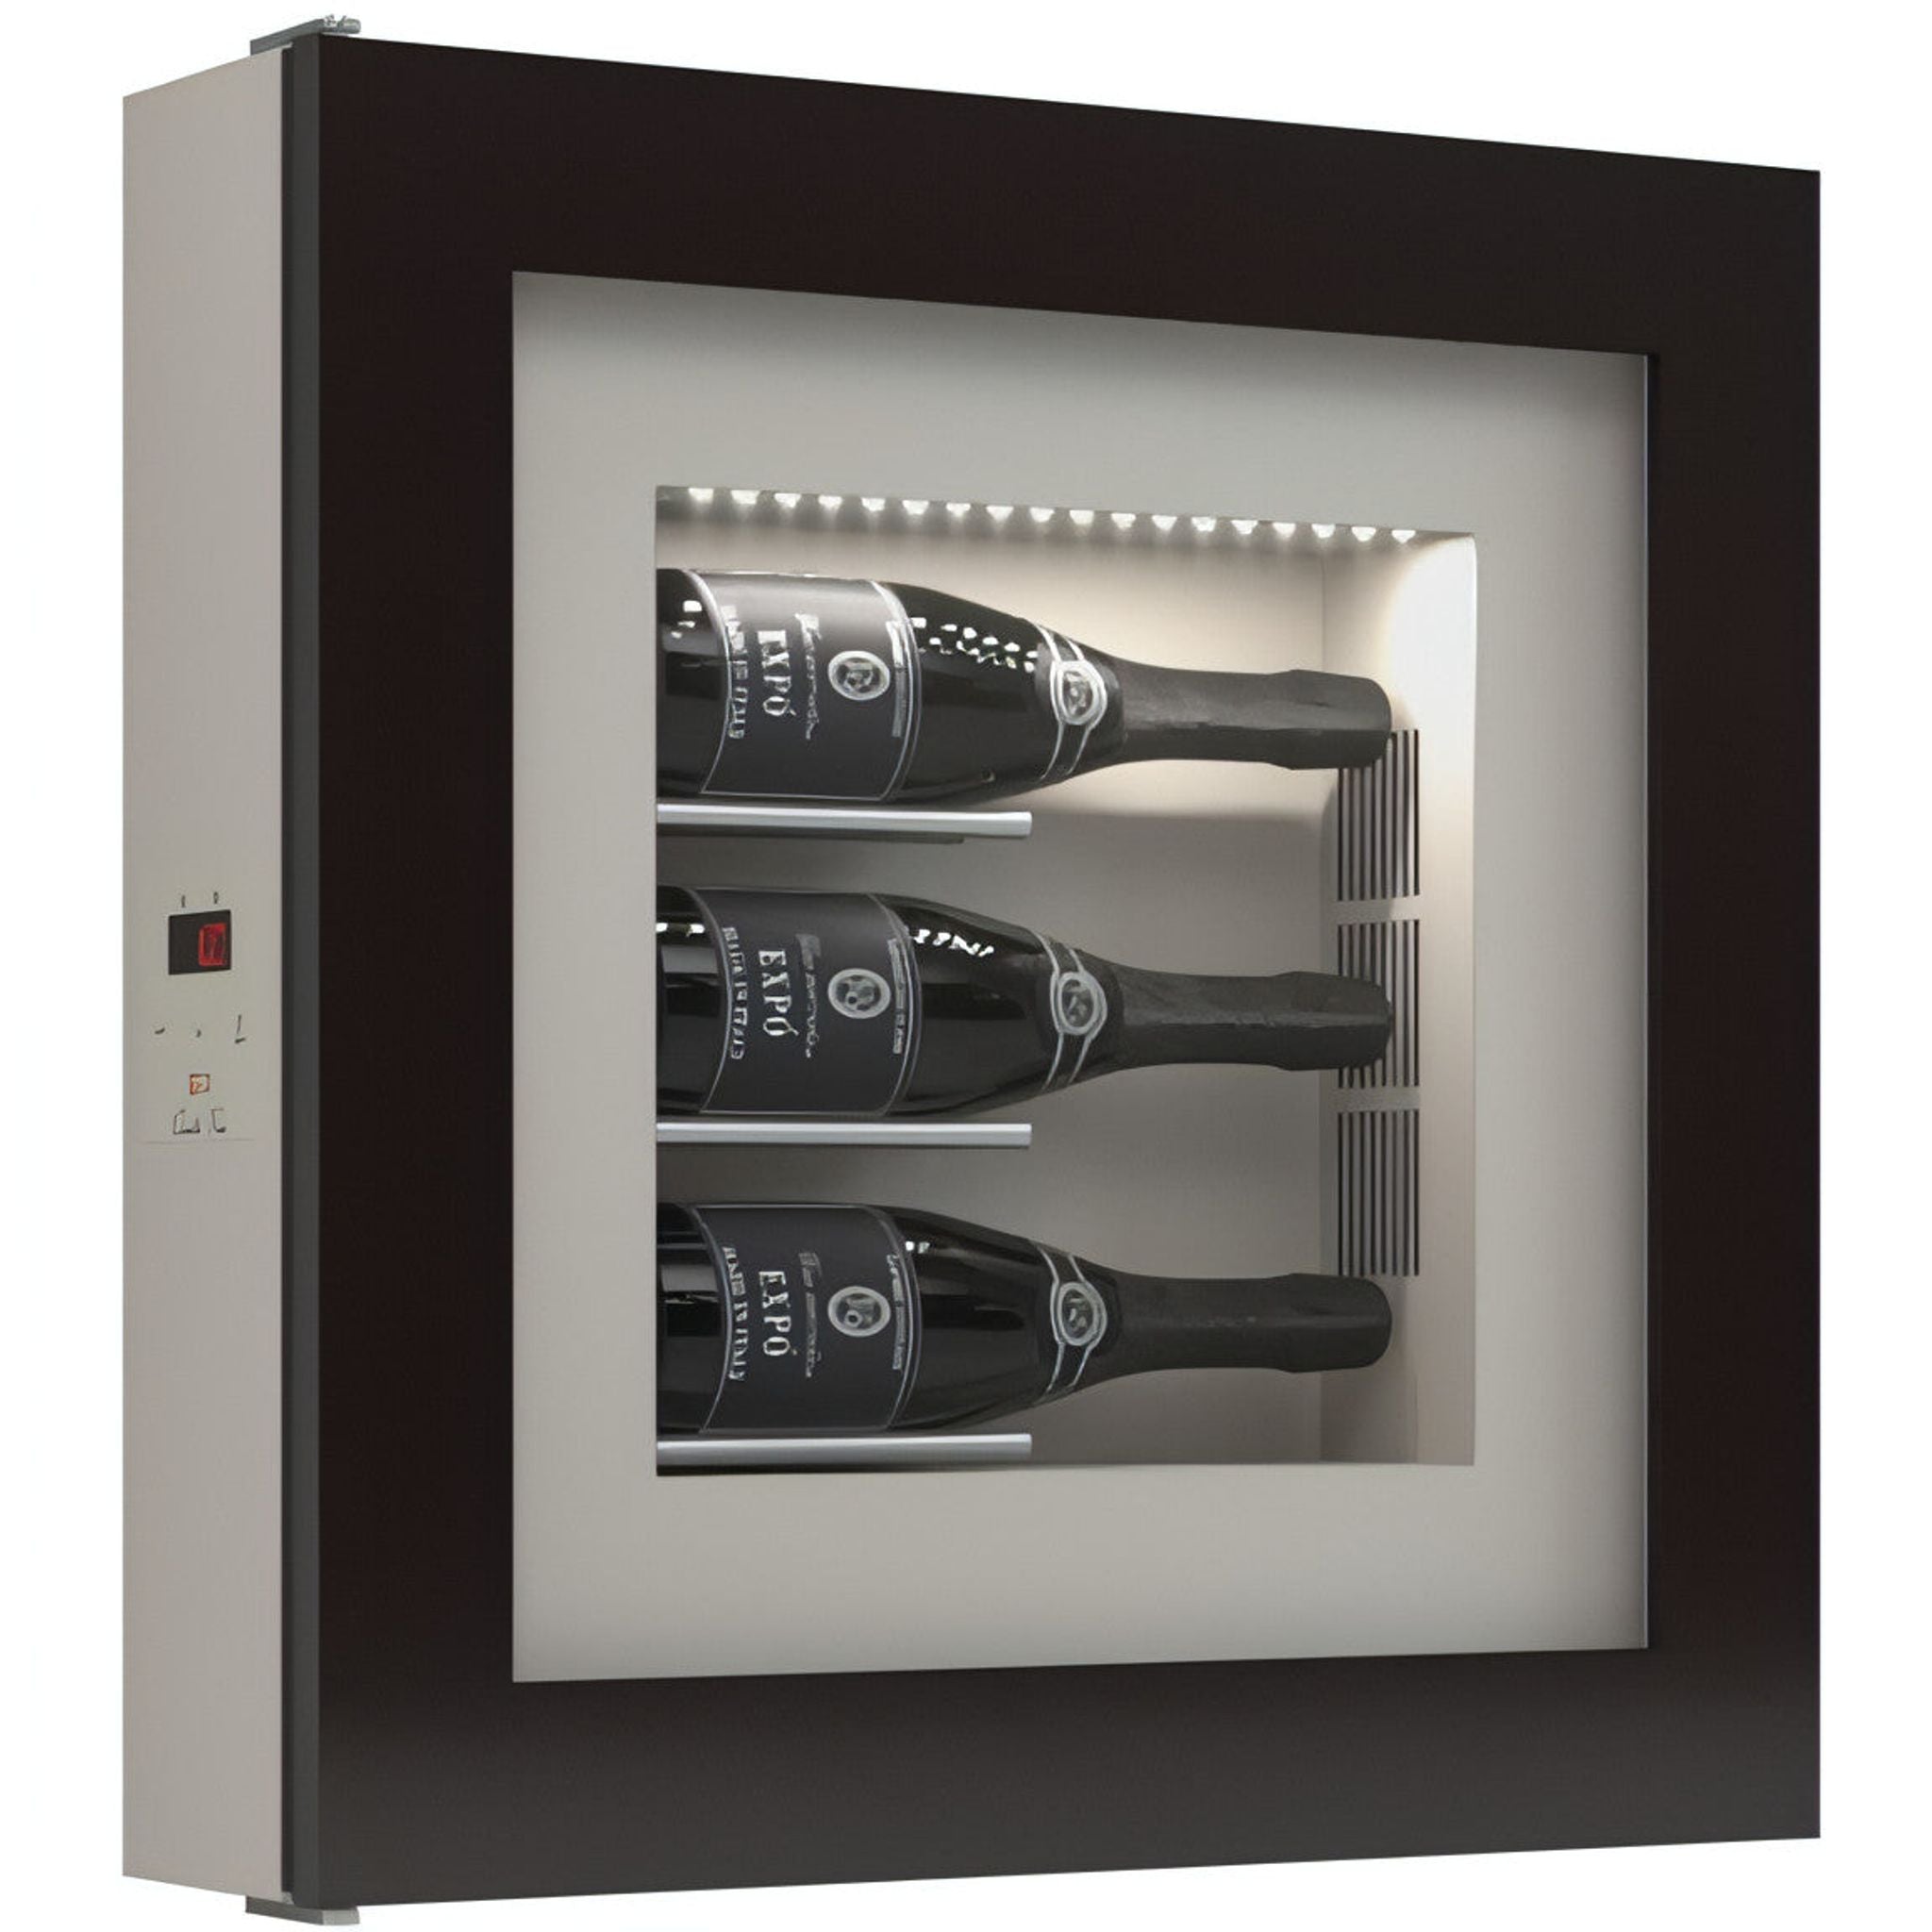 Quadro Vino - Wine Wall QV30 - 3 Bottle Display Unit